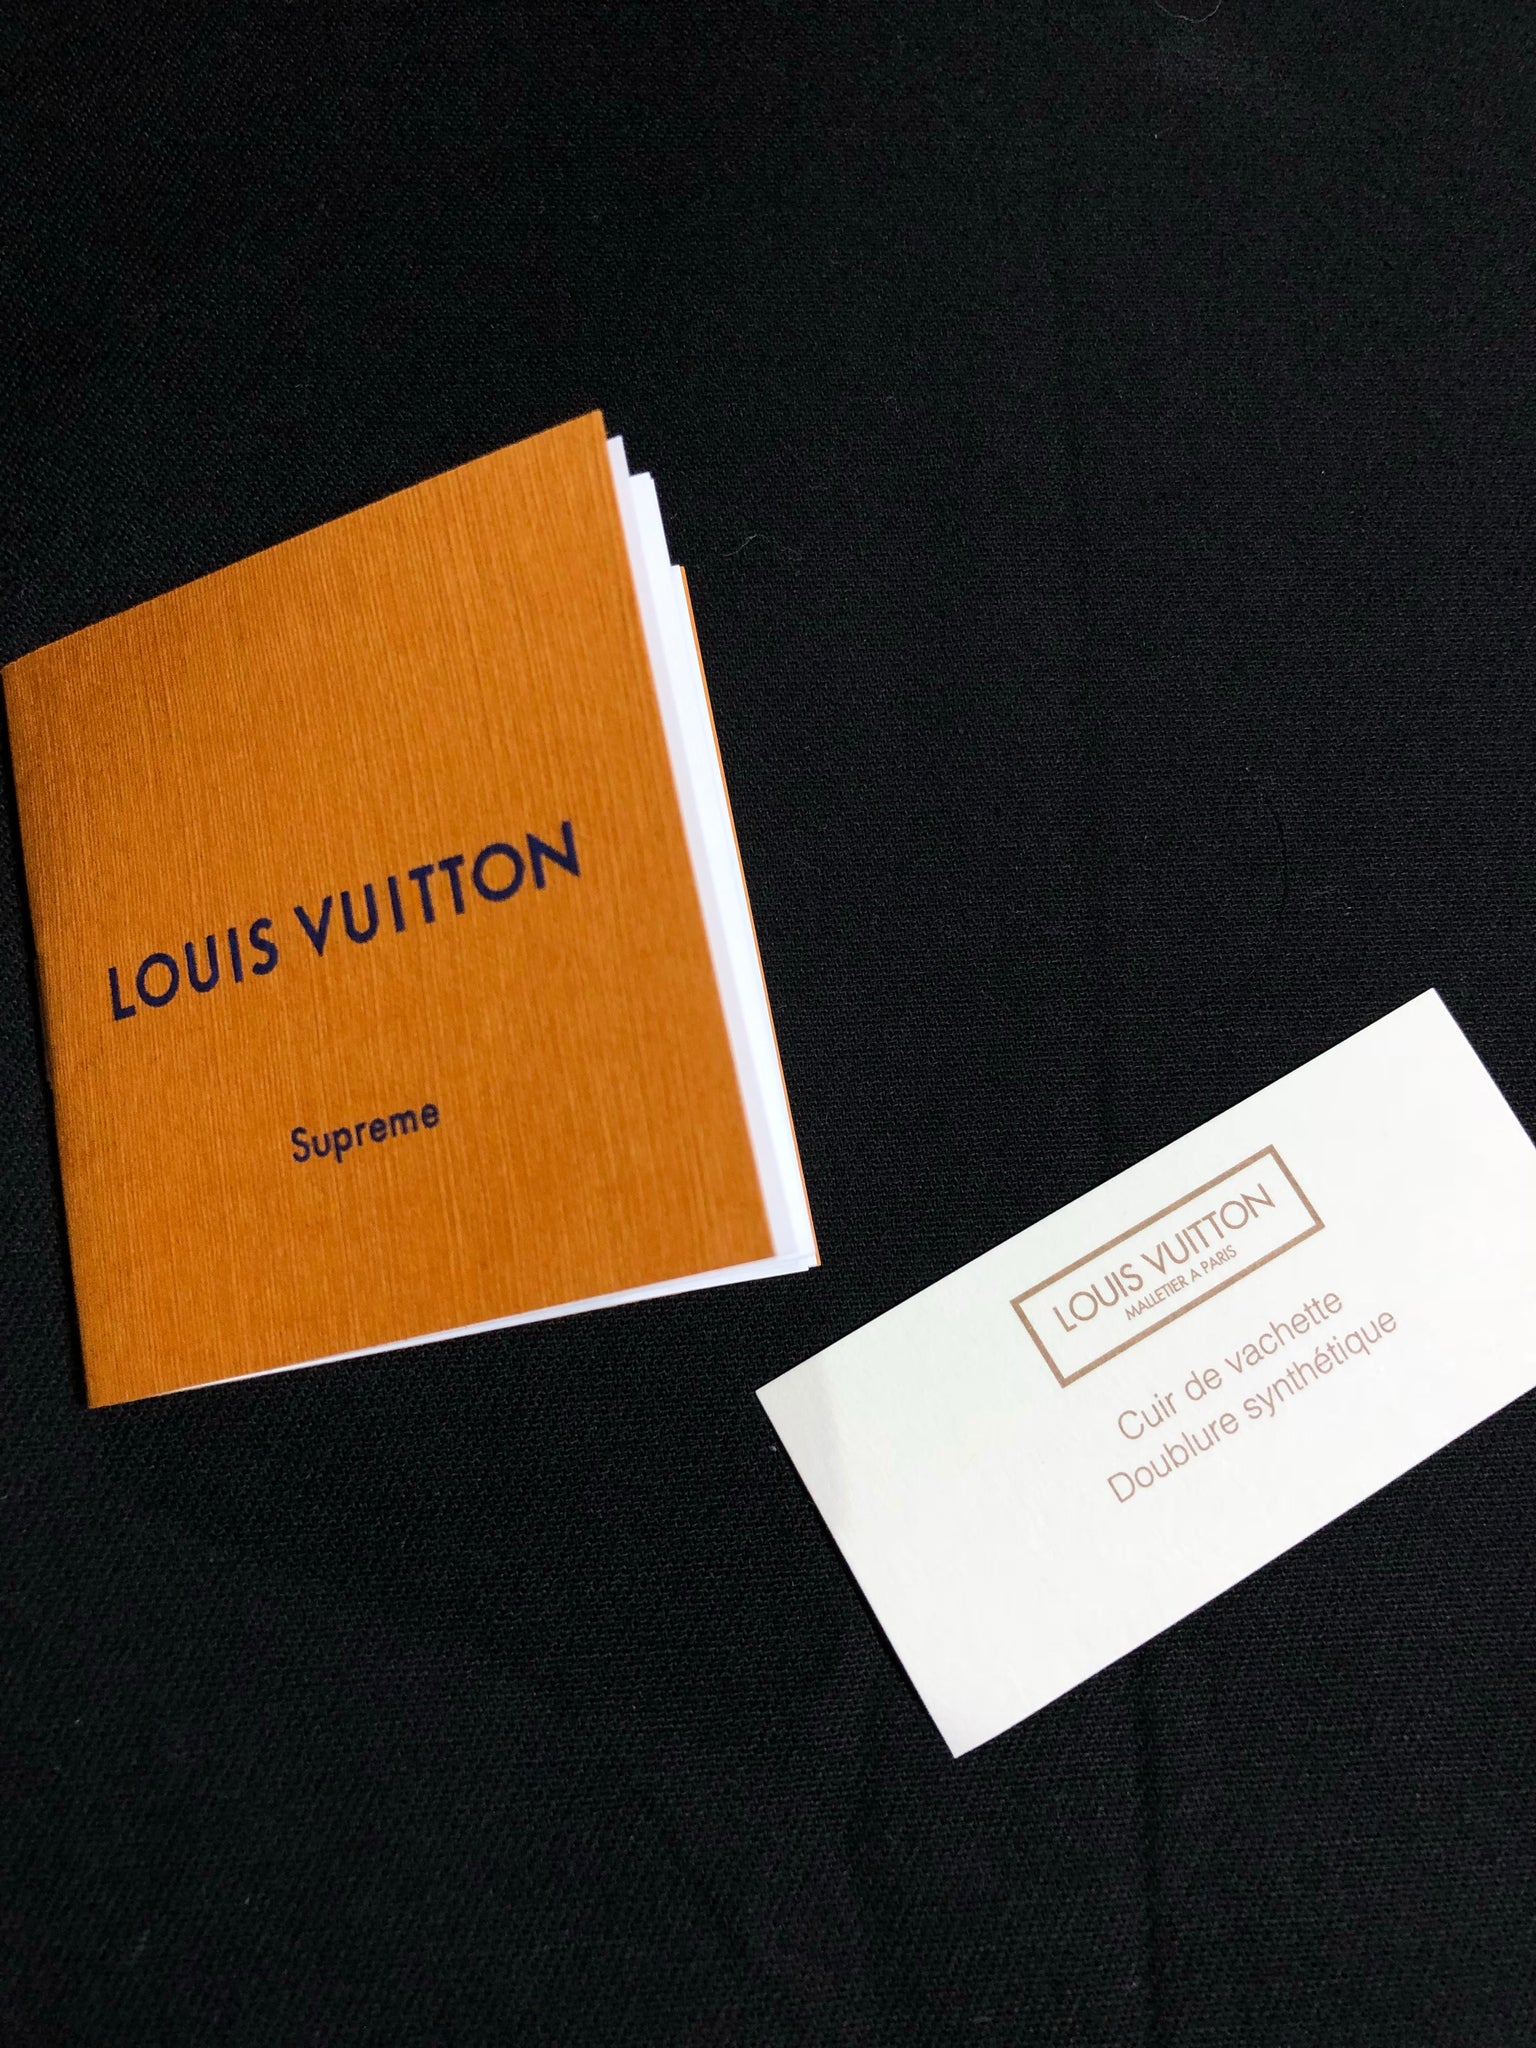 Supreme x Louis Vuitton Danube PM – Grails SF